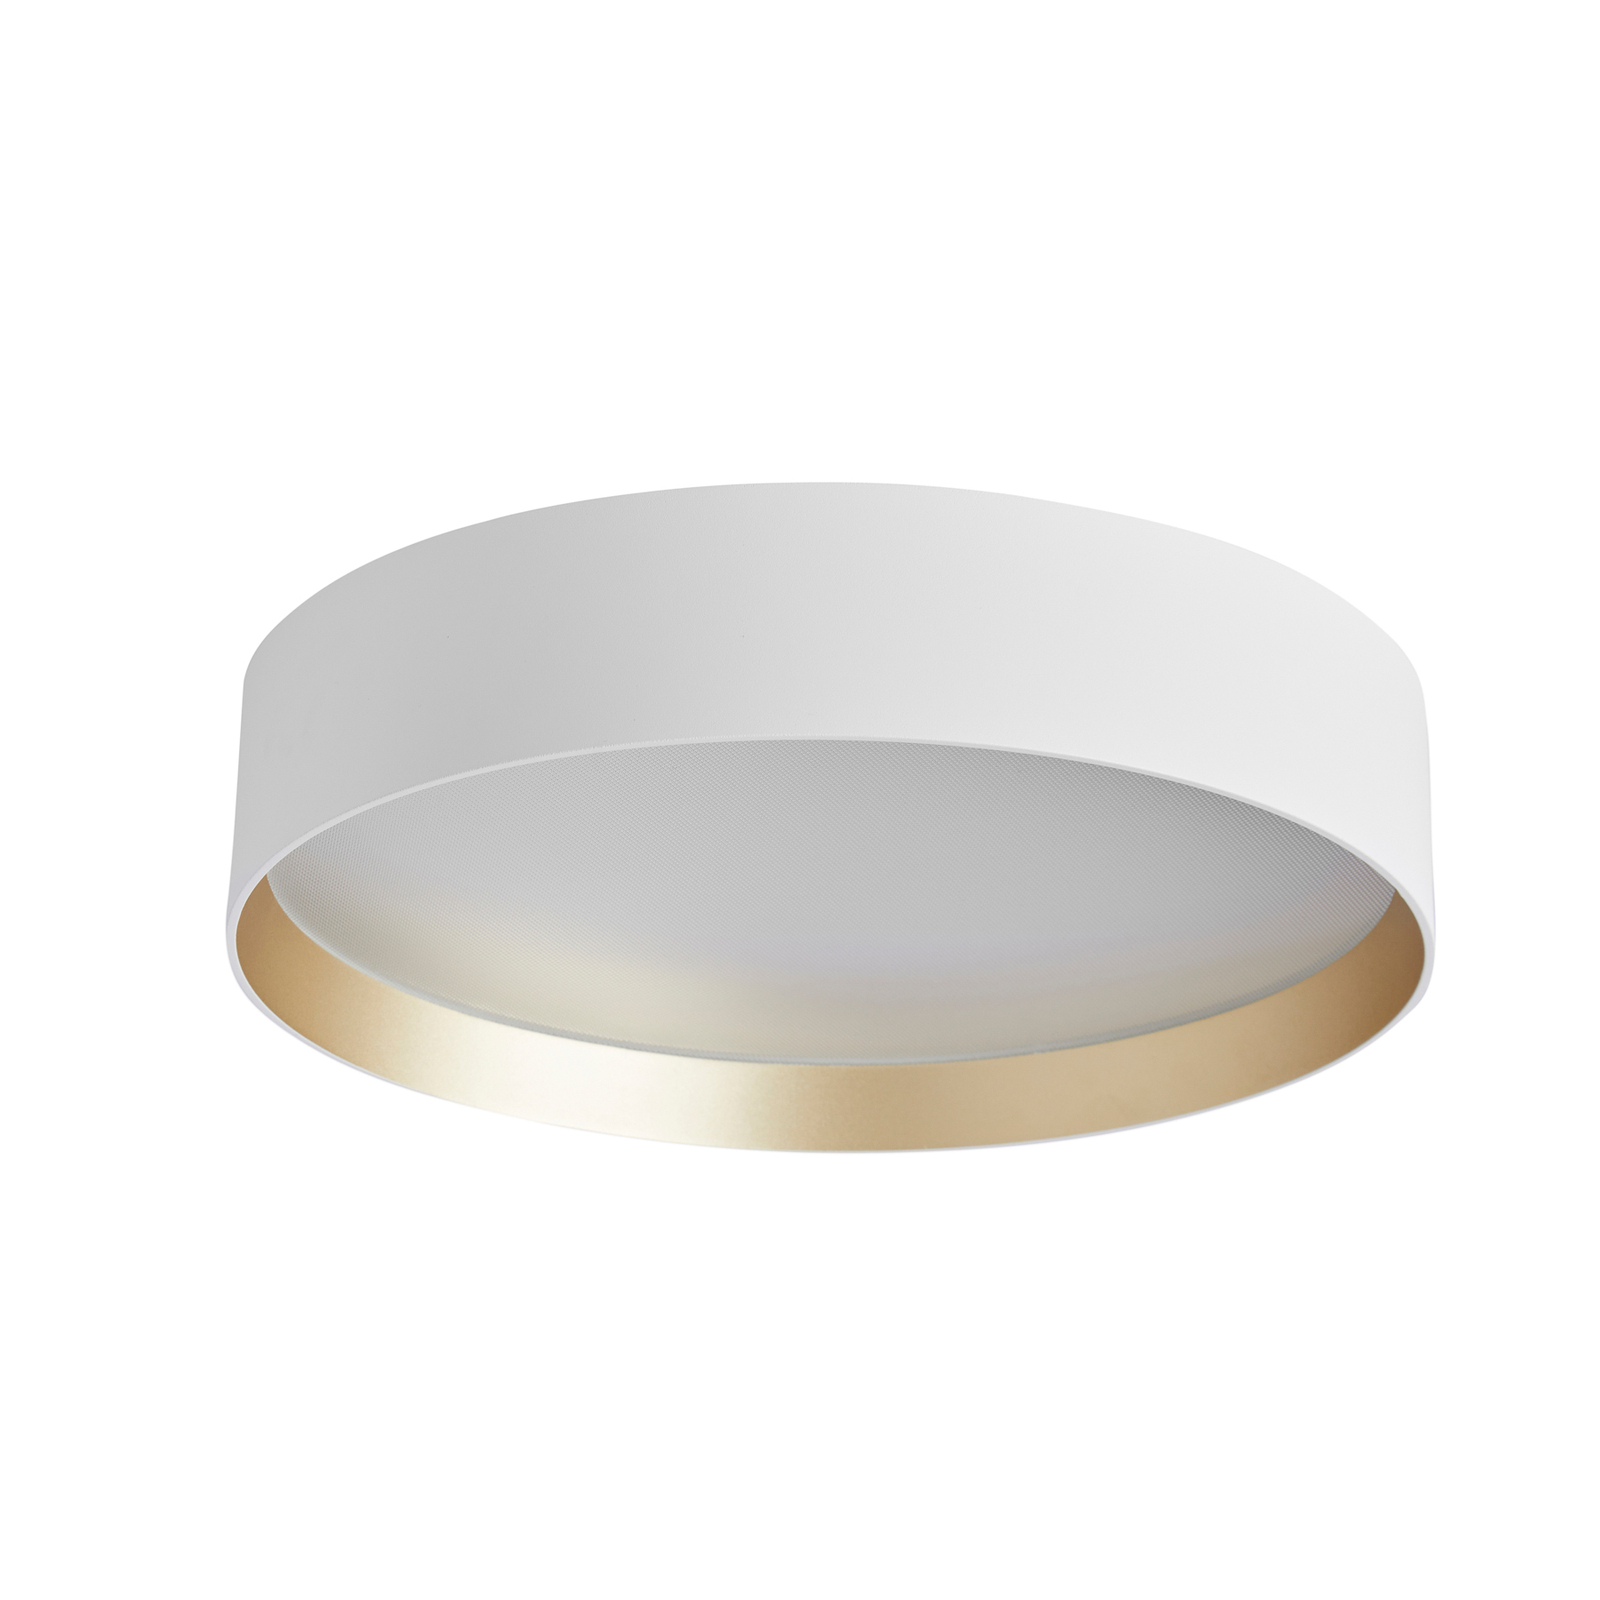 LOOM DESIGN Lucia LED ceiling lamp Ø35cm white/gold